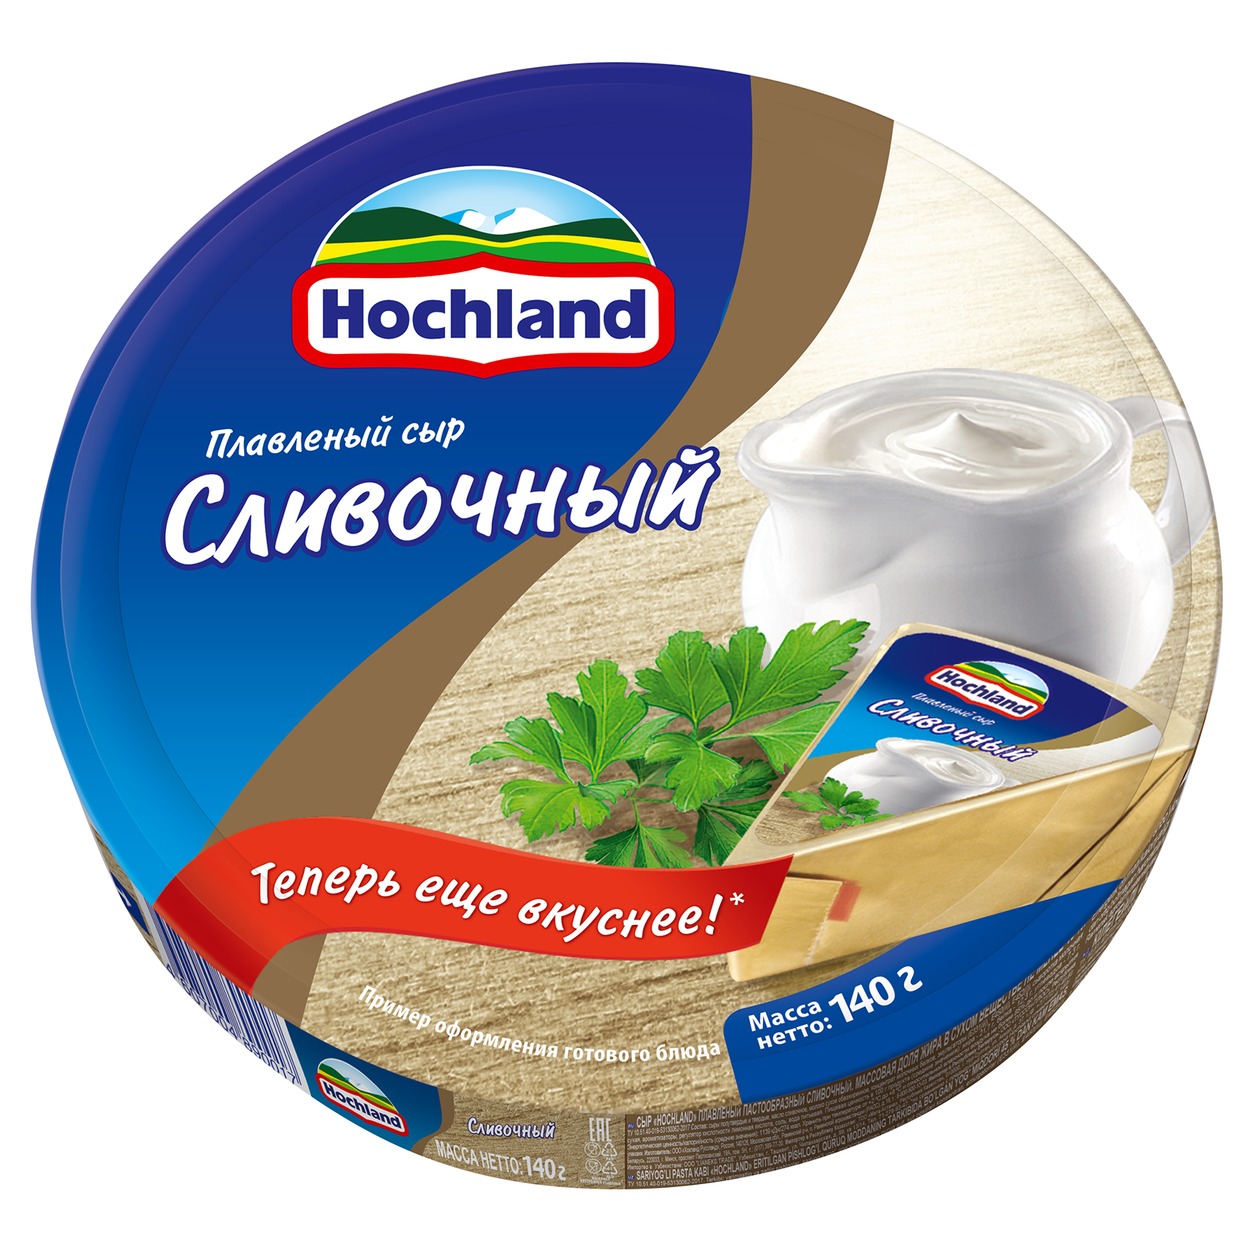 Сыр Hochland, Сливочный, 140 г по акции в Пятерочке